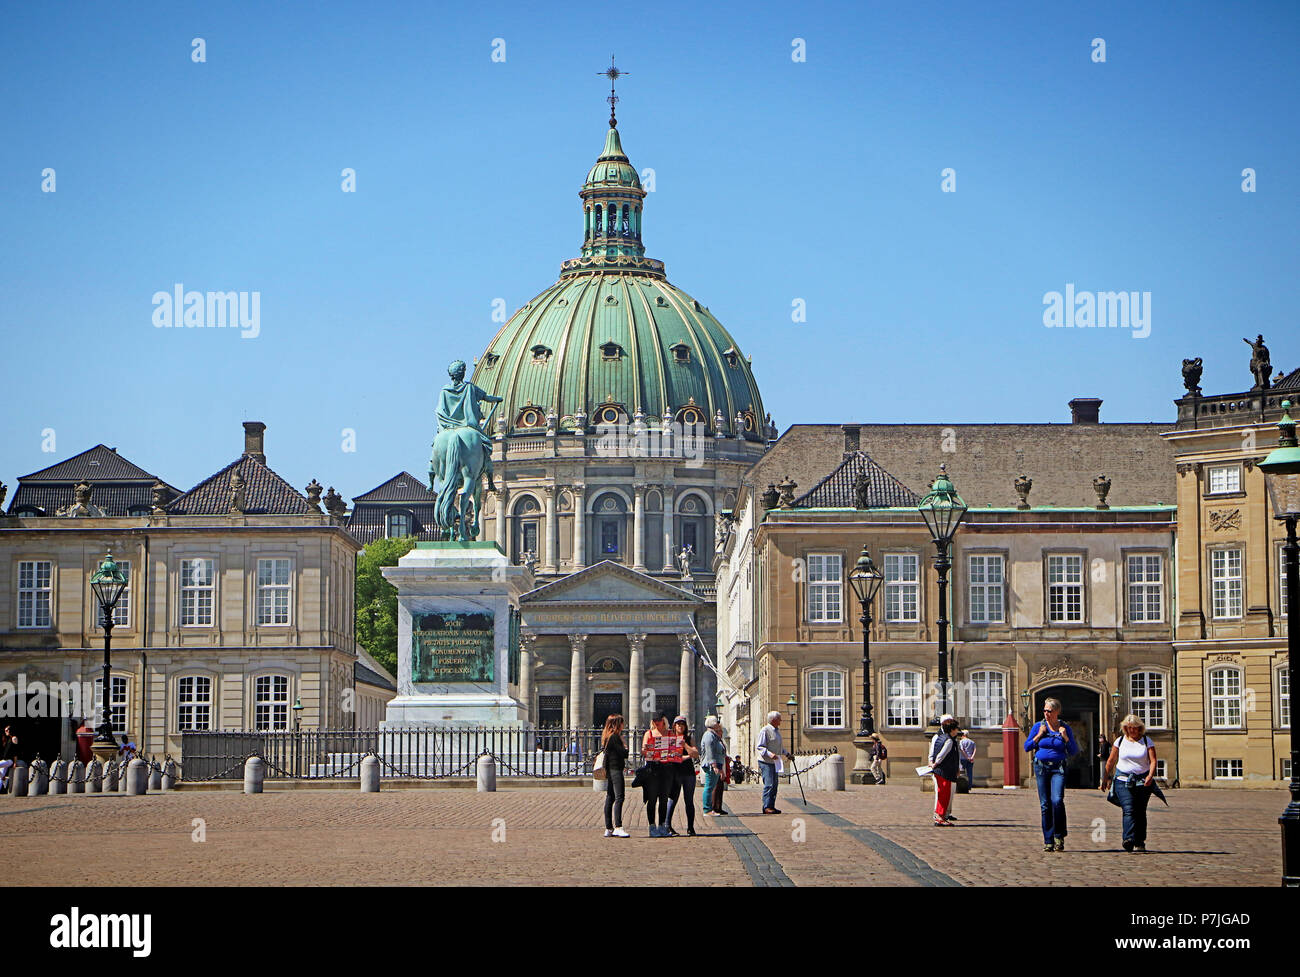 COPENHAGEN, Danimarca - 16 maggio 2018 Dettaglio di Amalienborg Palace square, residenza della regina danese, con il Frederik la chiesa (la Chiesa di Marmo) Foto Stock